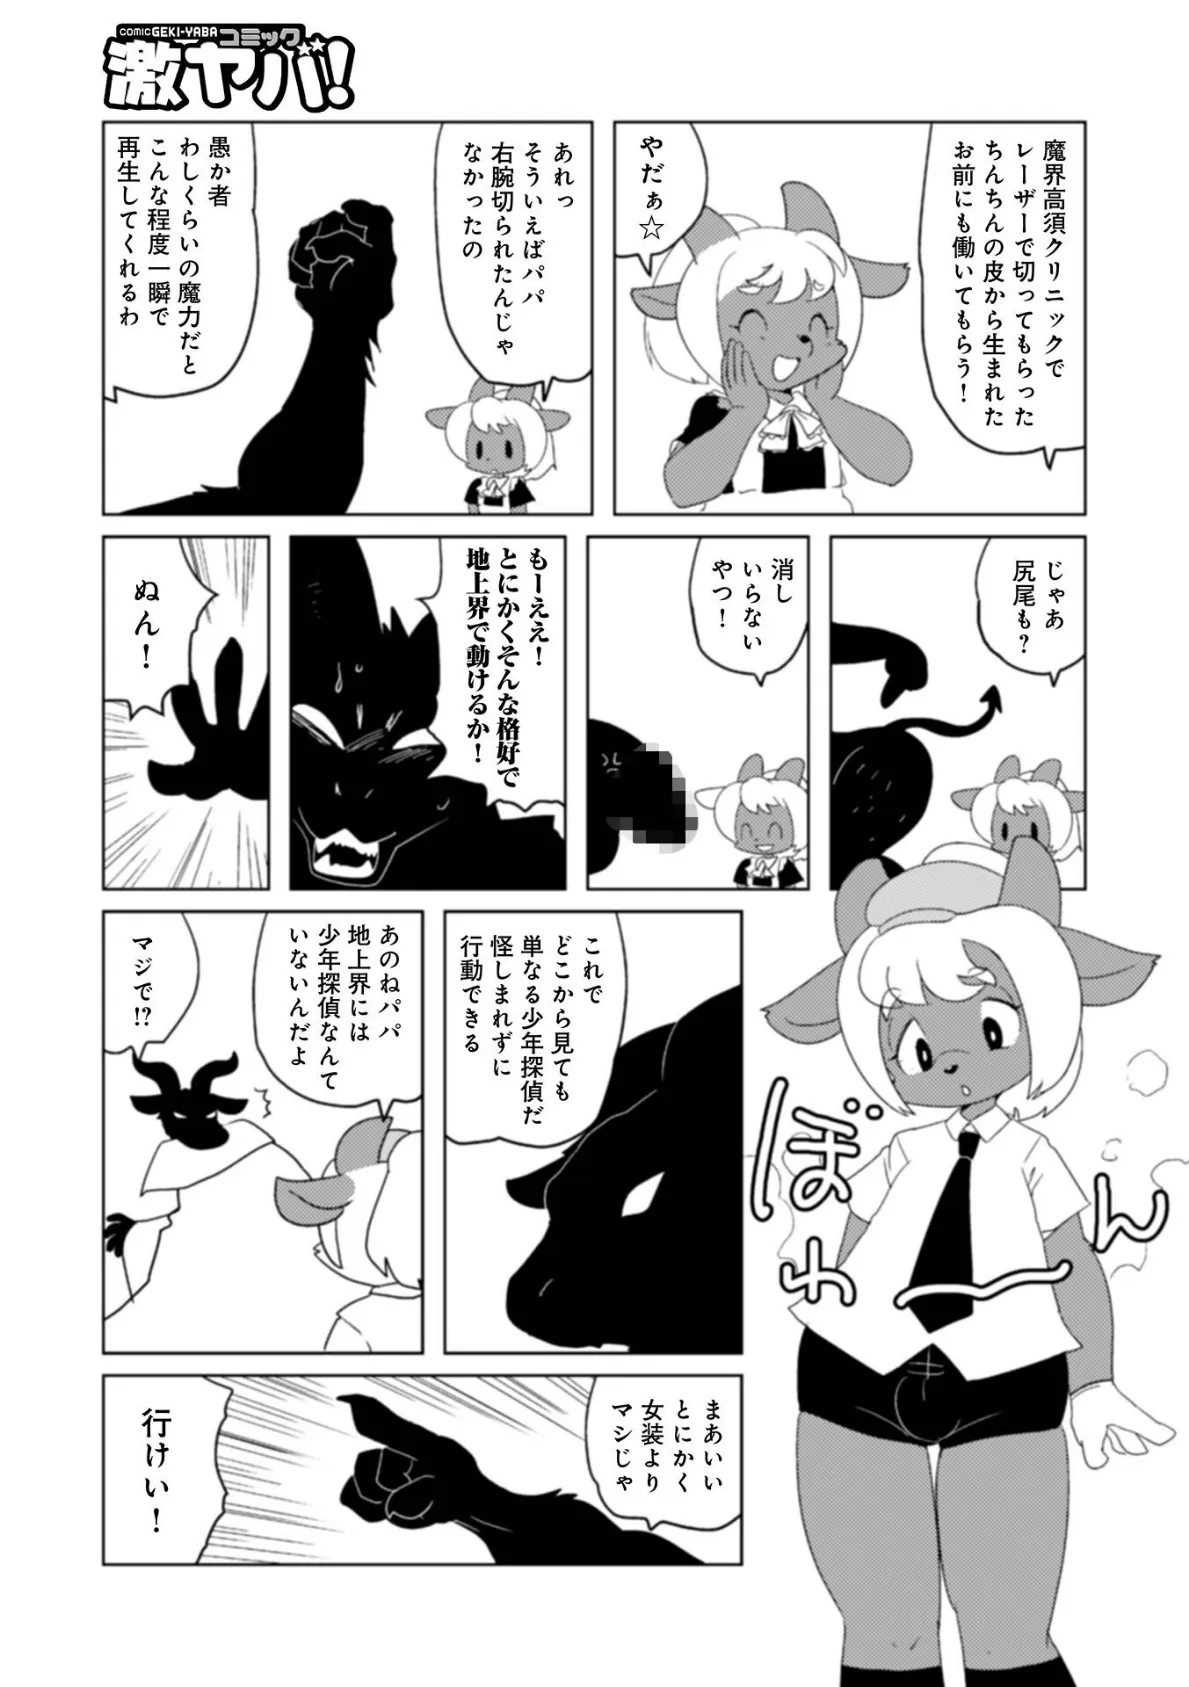 魔界探偵サバトくん第1巻 5ページ